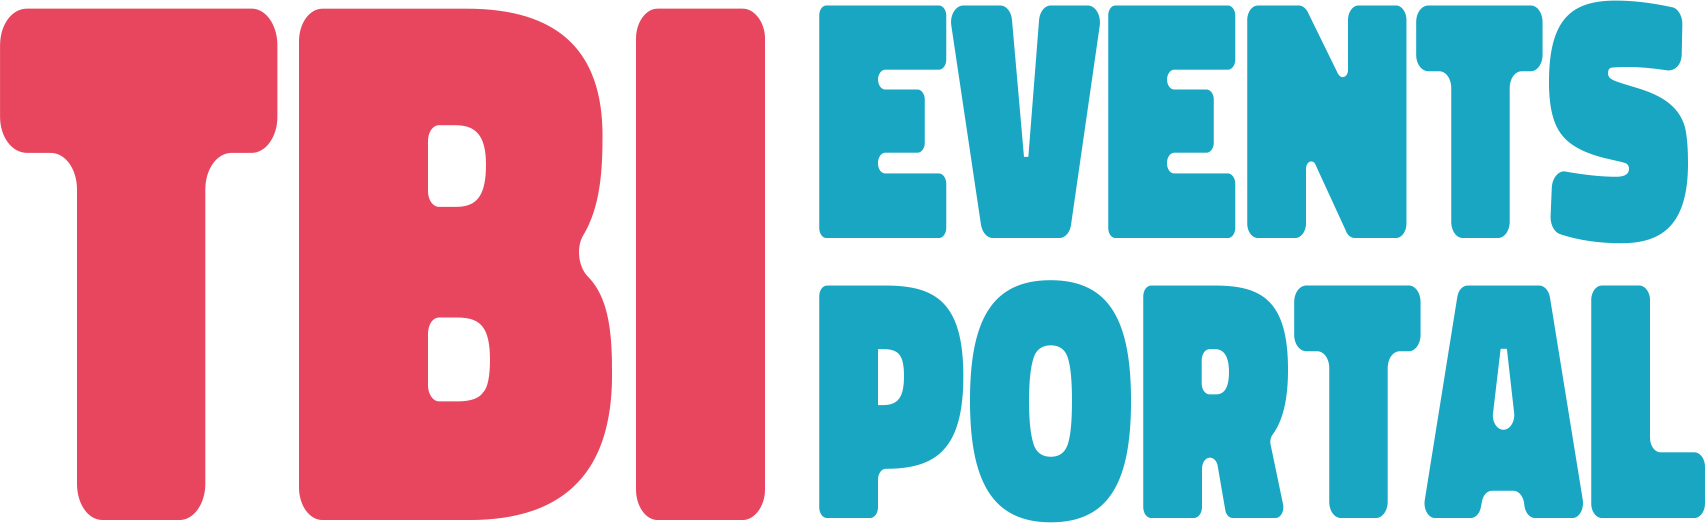 Logo: TBI Events Portal